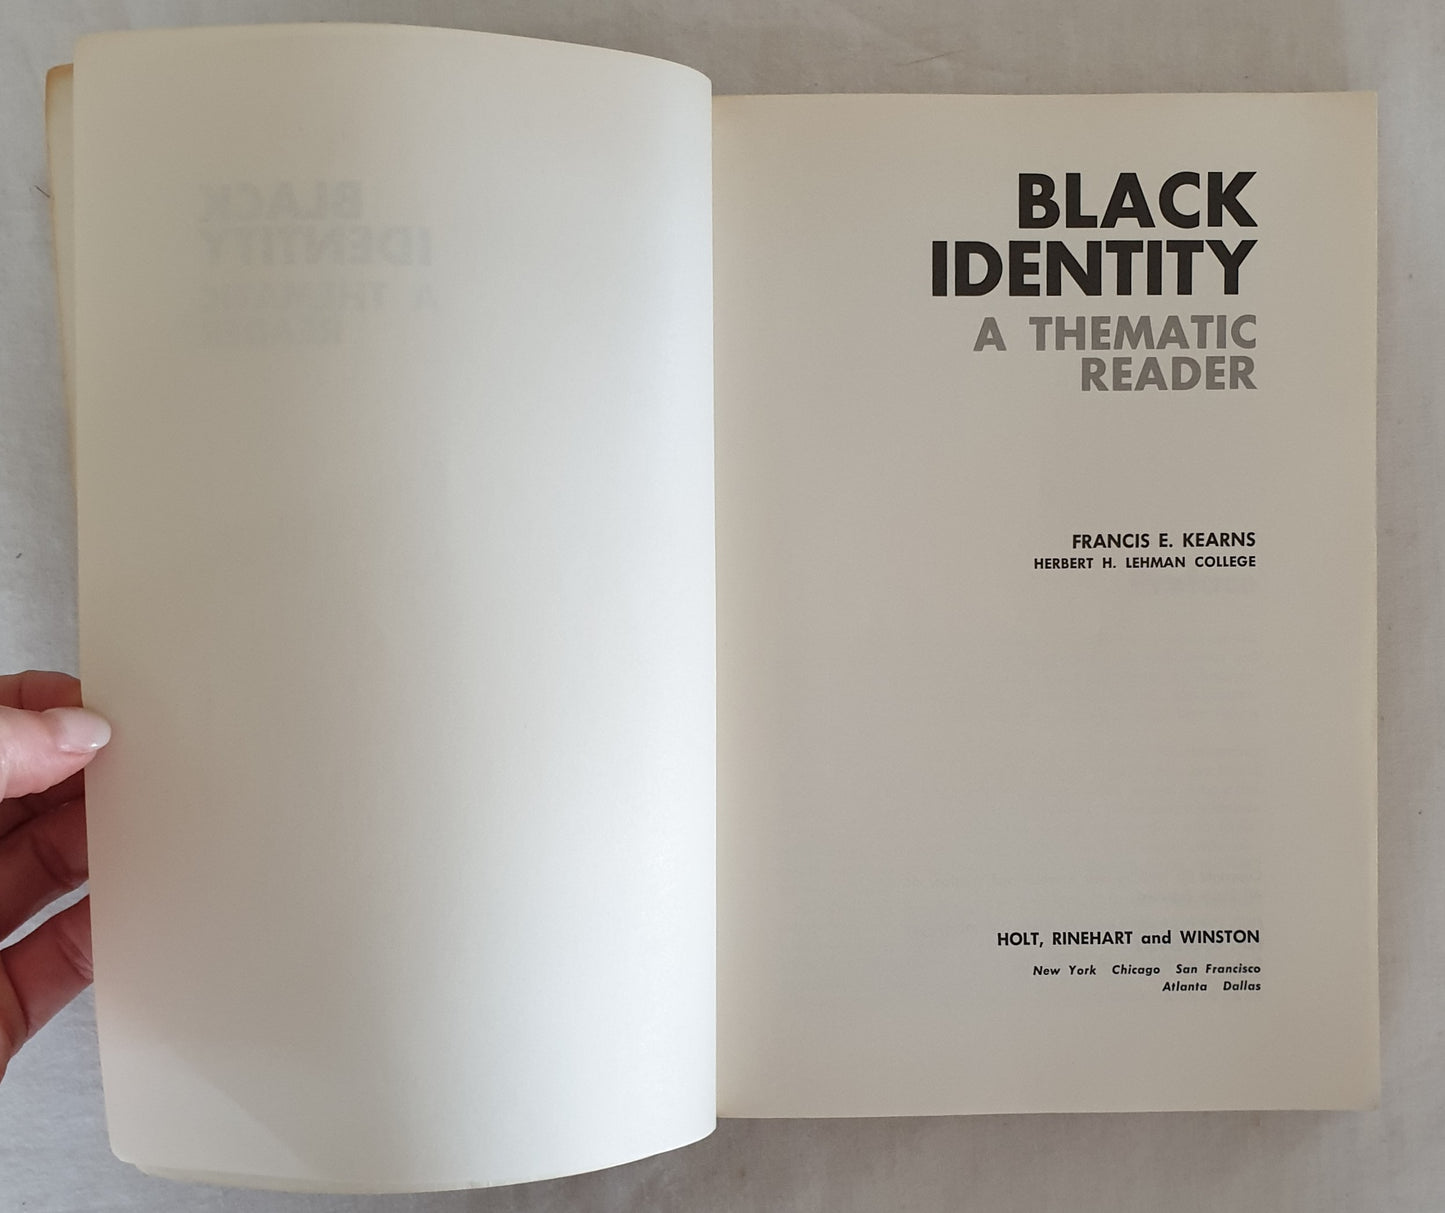 Black Identity by Francis E. Kearns